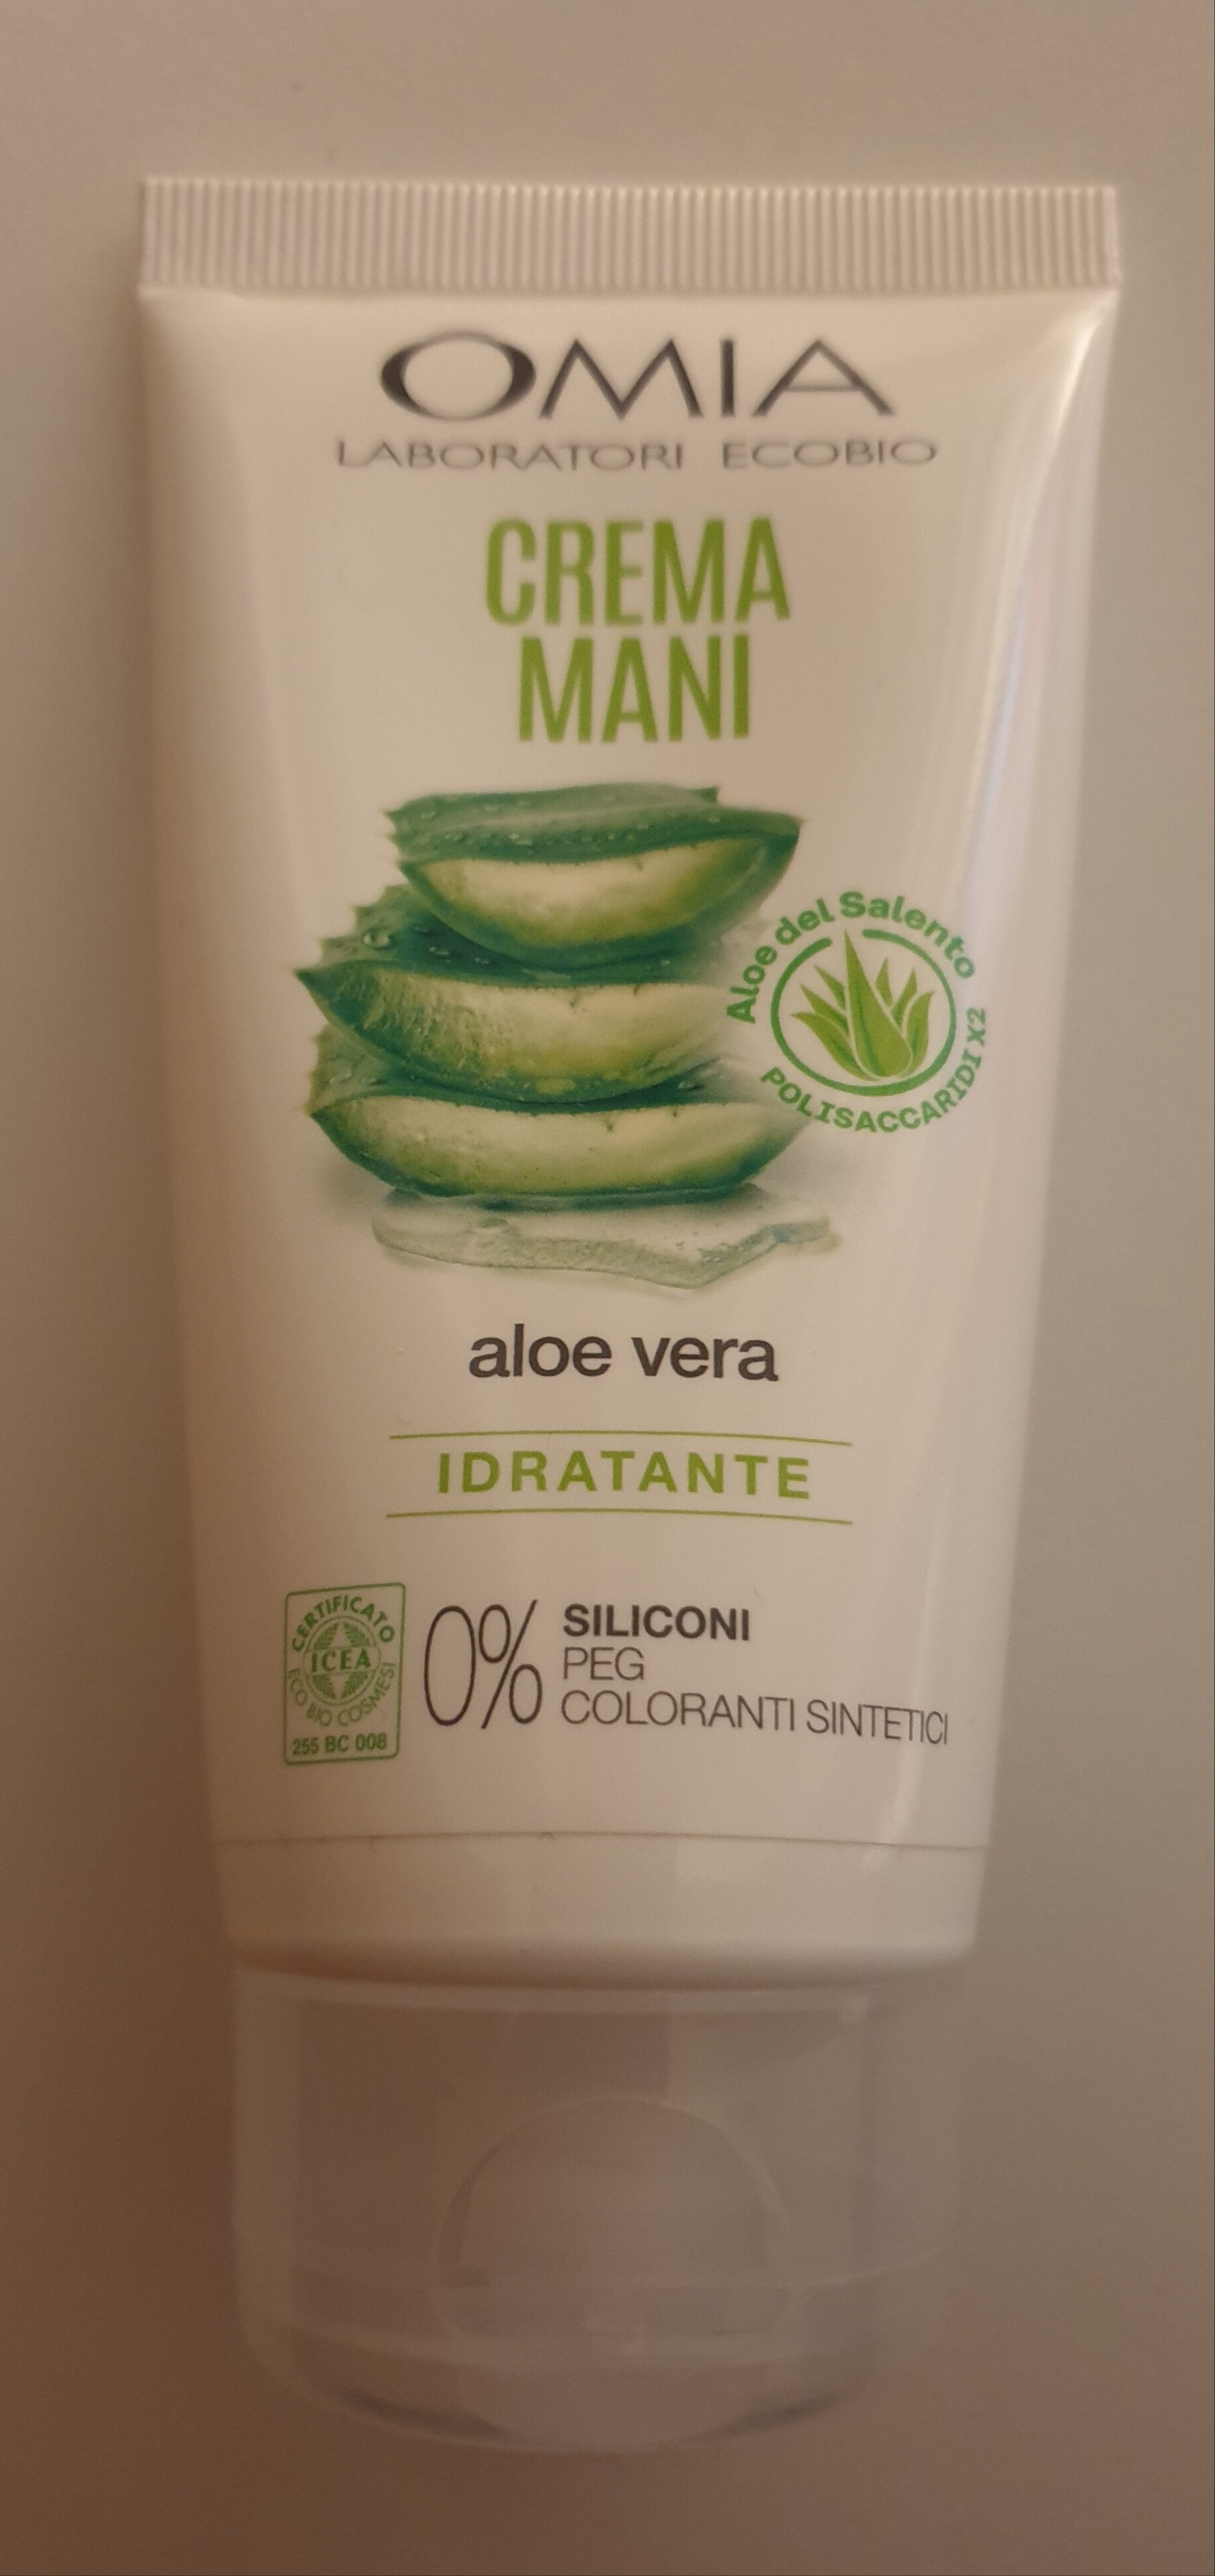 Crema mani aloe vera - Produkto - it